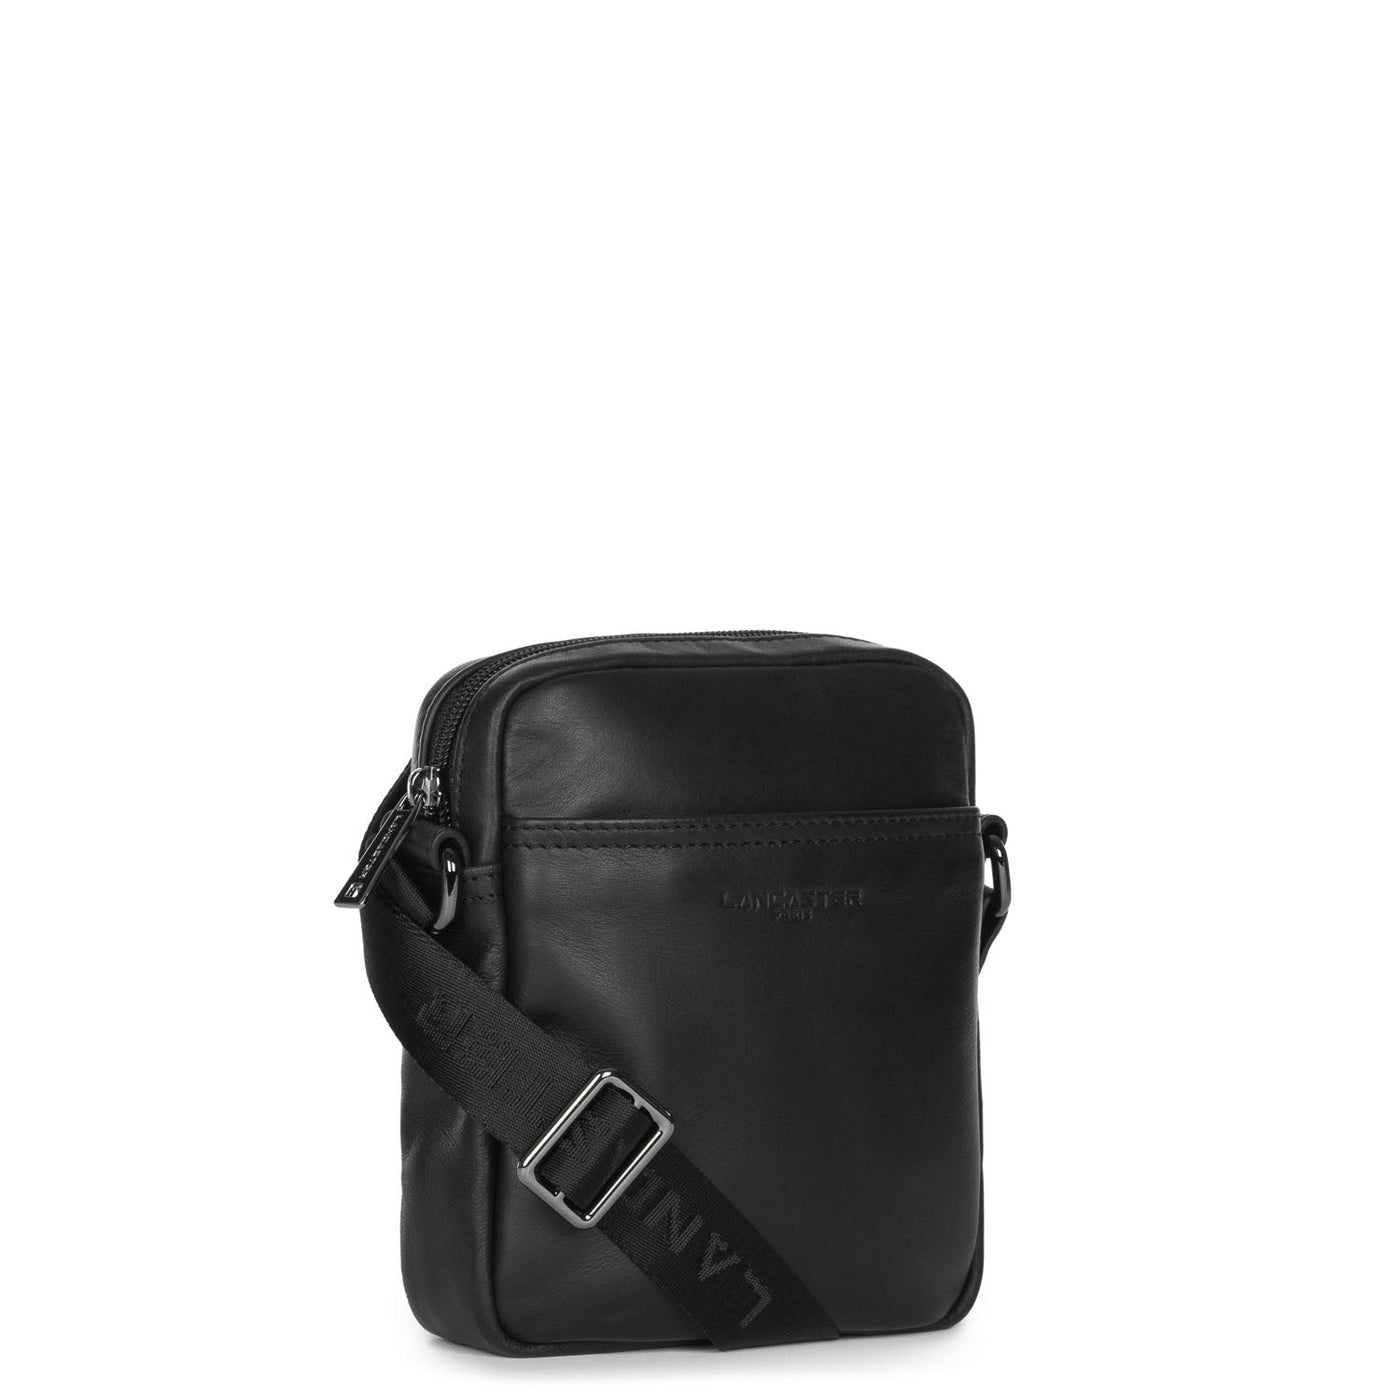 Vintage Camera Shoulder Bag Cowhide Leather Women Small Crossbody Bag (Black)